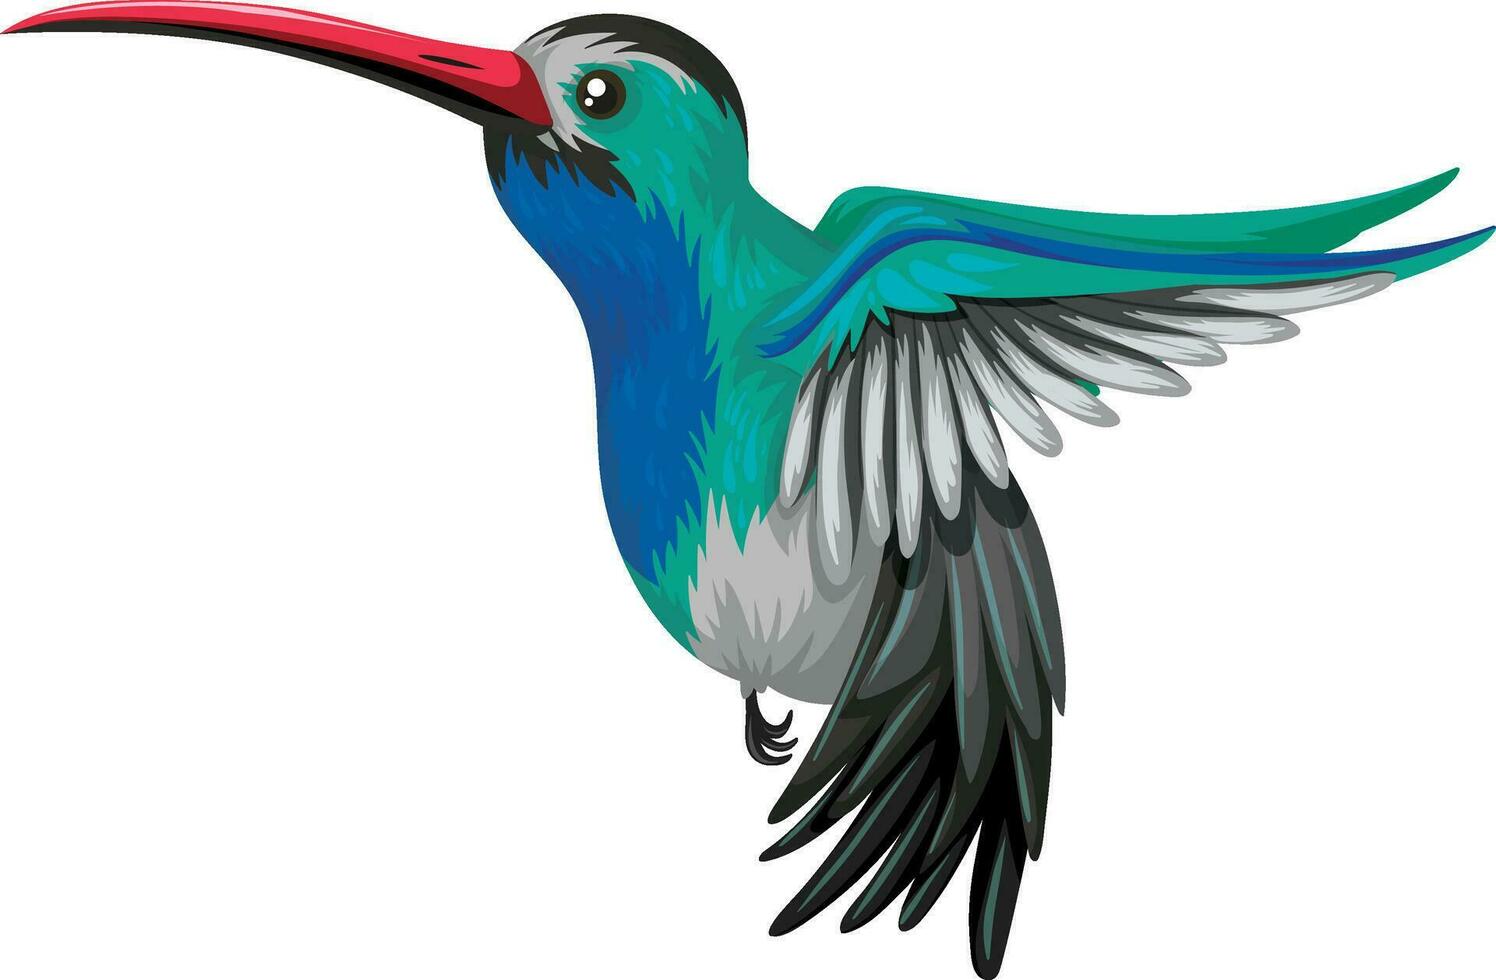 Hummingbird animal cartoon sticker vector